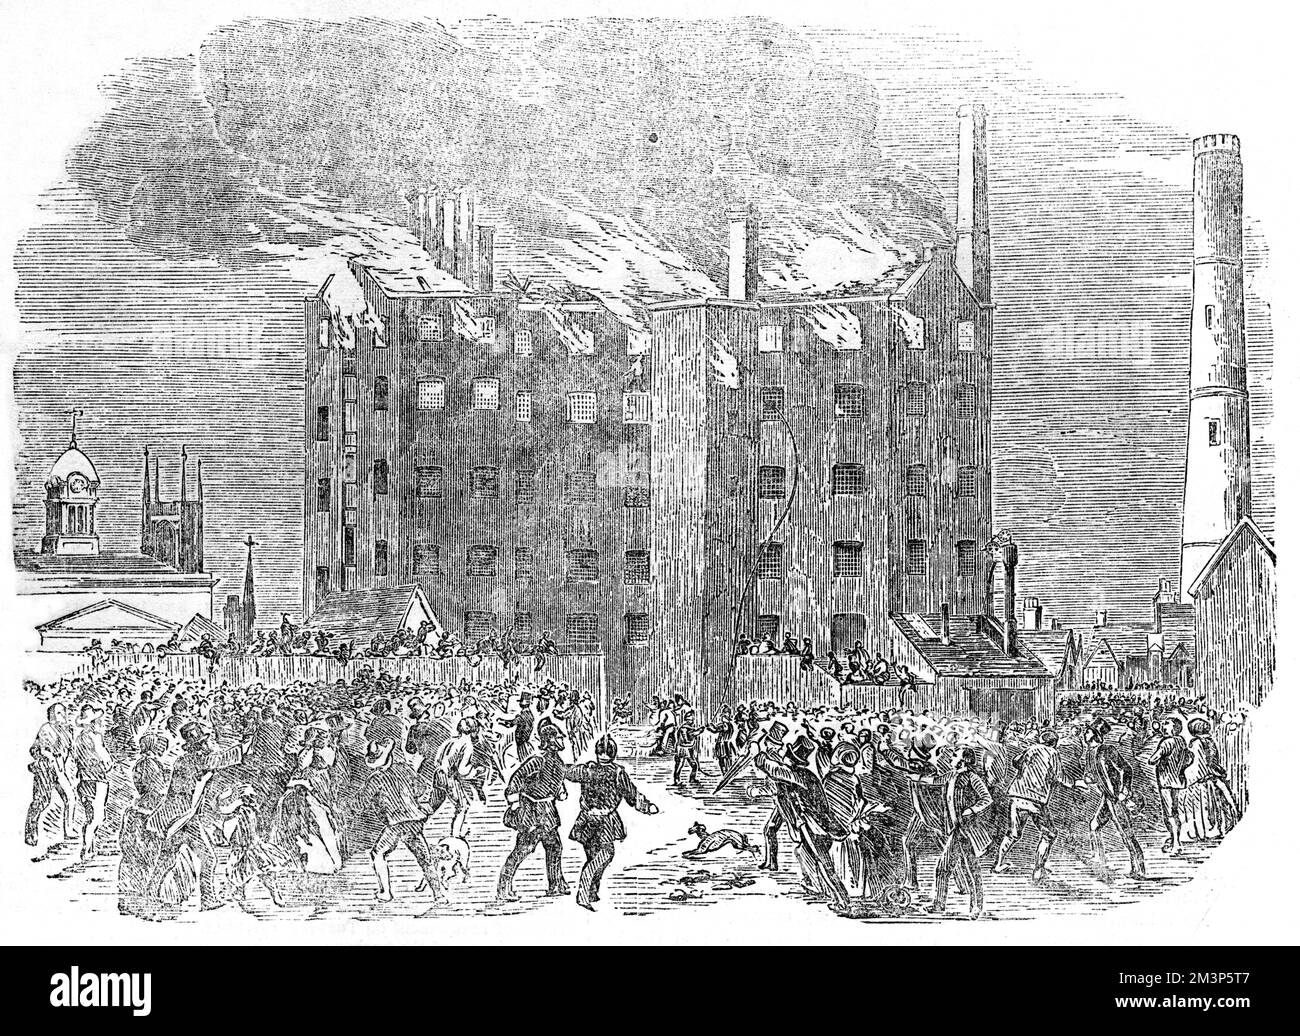 Un incendie prend place dans la fabrique de soie de Joseph Davenport, dans la rue Albert, près du marché de maïs, Derby. L'incendie a commencé dans le toit et les étages inférieurs ont été sauvés, mais la soie et les machines ont été endommagées, en partie par l'eau qui a été nécessaire pour éteindre l'incendie. Date : juillet 1853 Banque D'Images